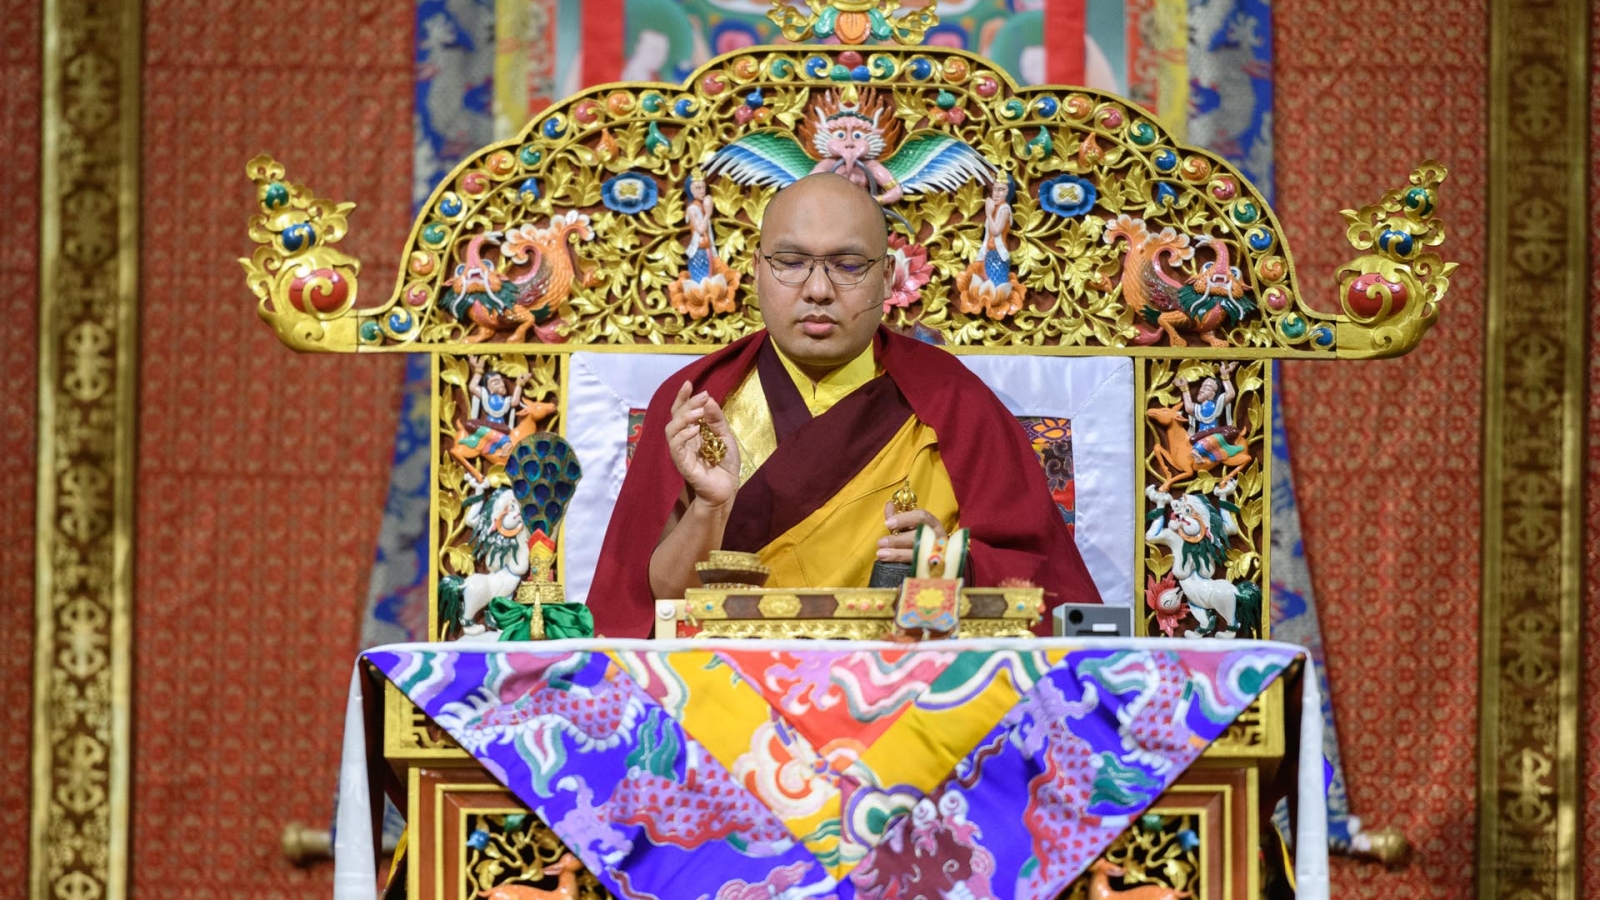 Karmapa giving the Vajrasattva empowerment